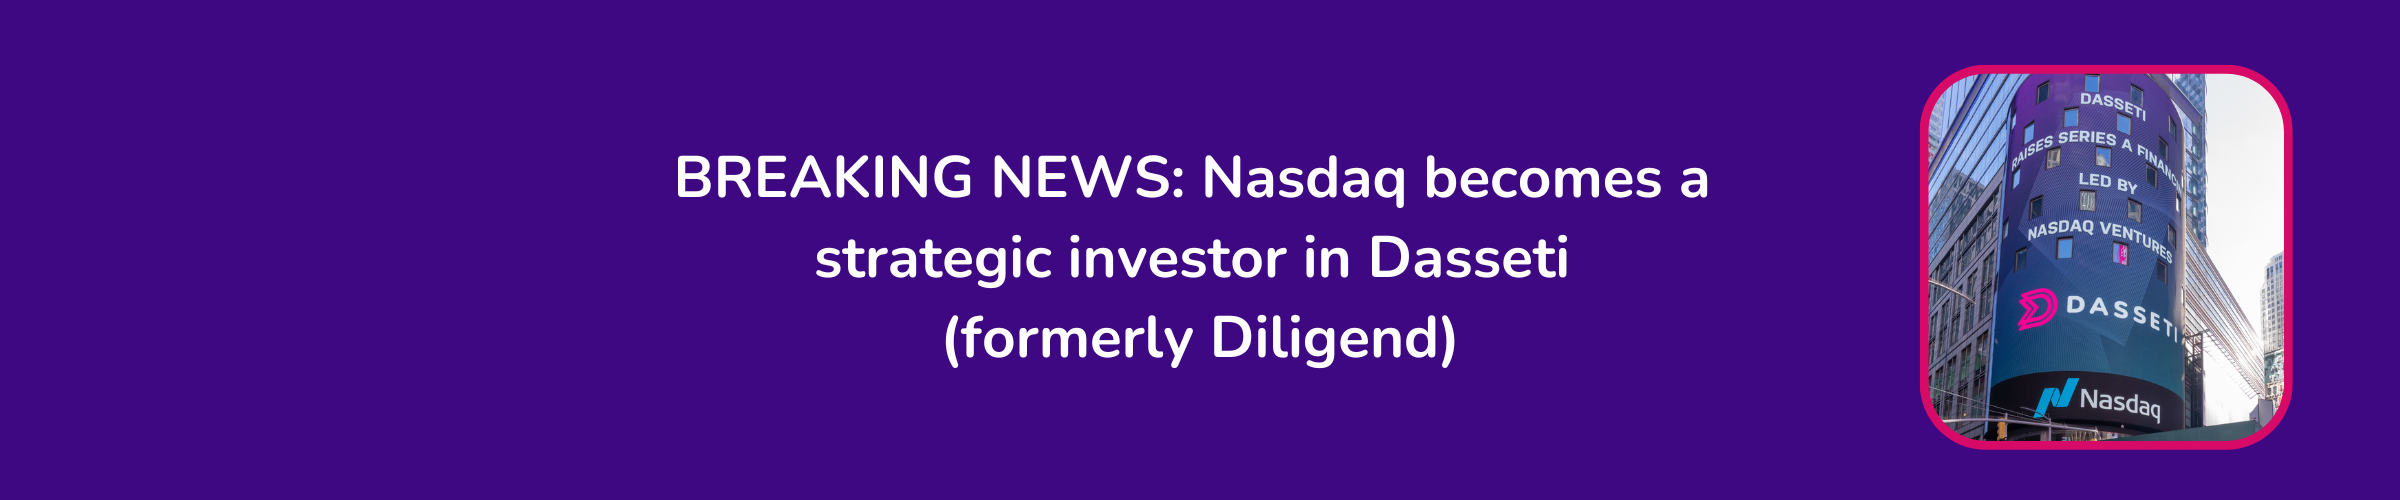 Nasdaq Invests in Dasseti 